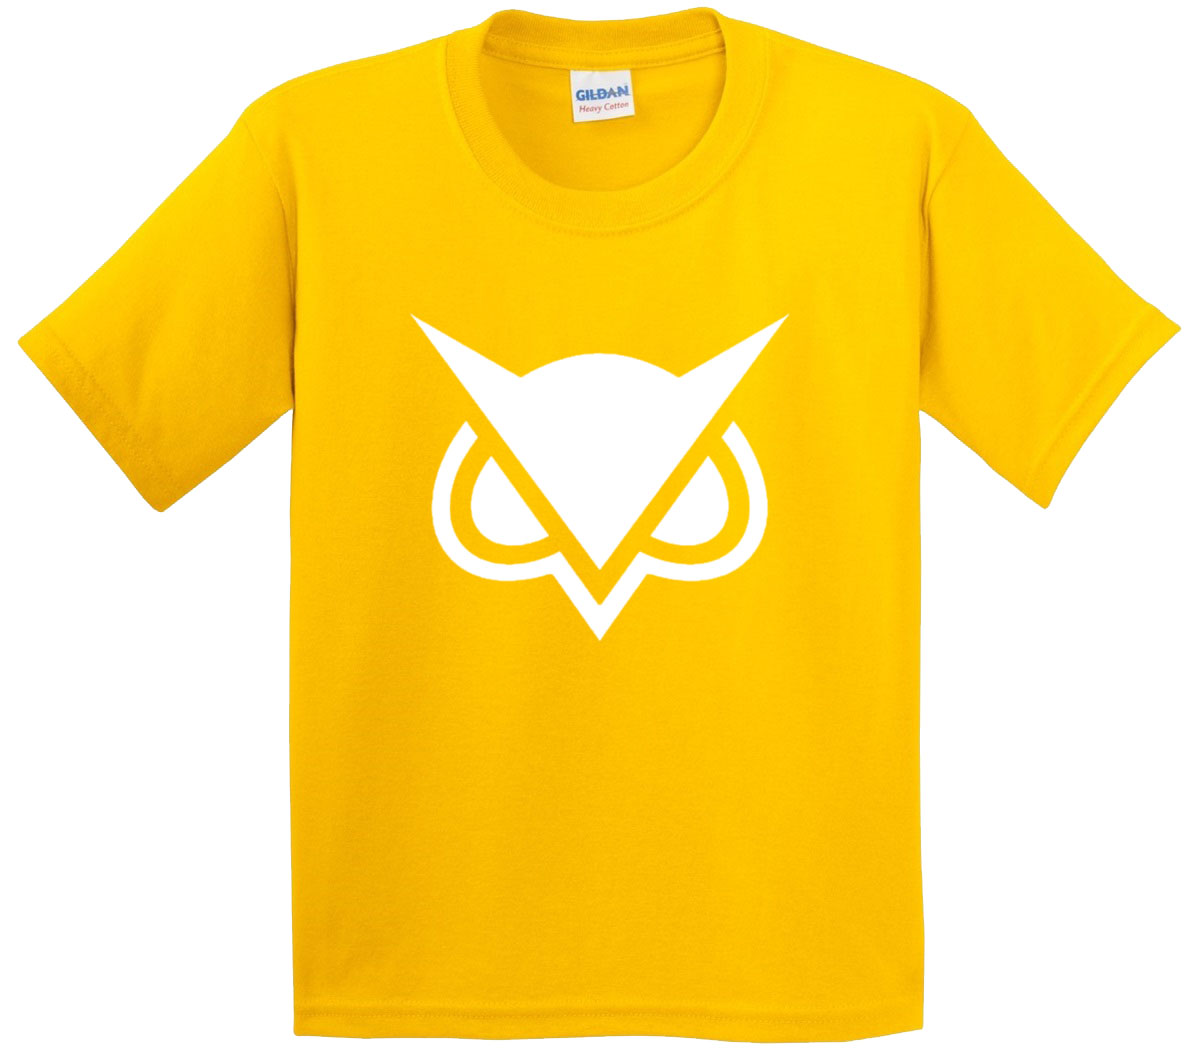 New Vanoss Logo - the golden limited vanoss t shirt roblox